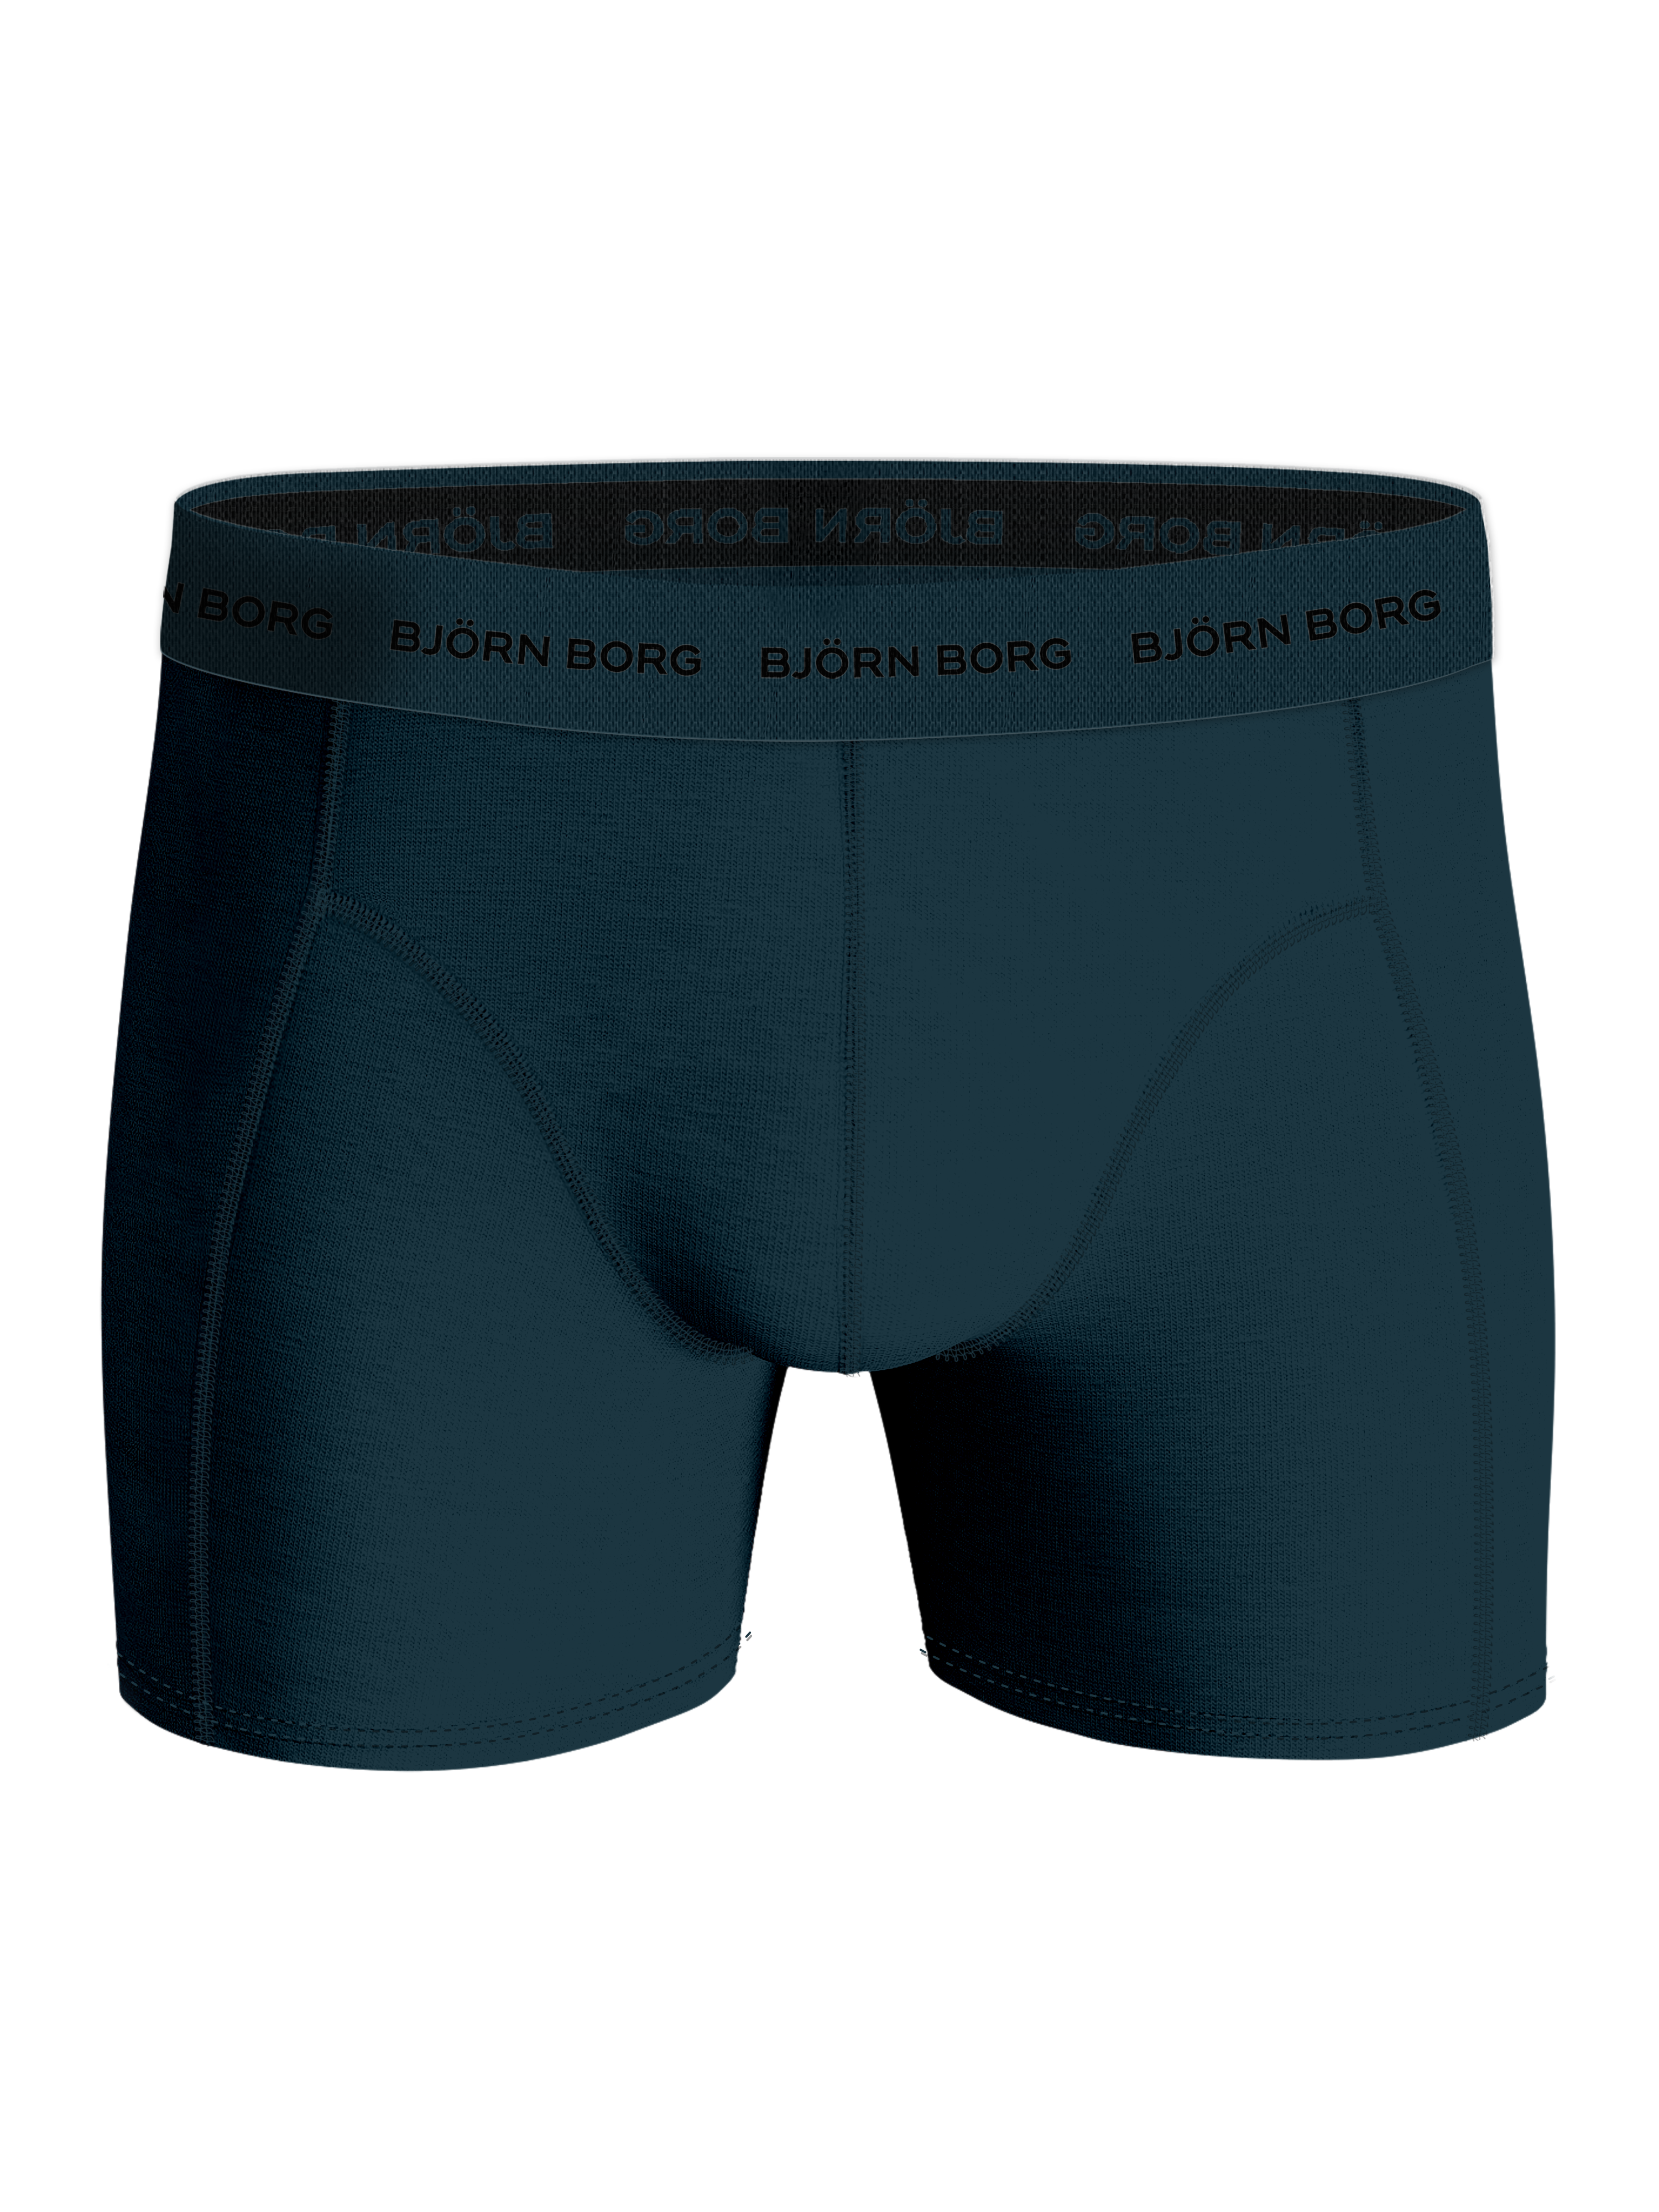 2 Pack Bjorn Borg Cotton Stretch Men Underwear 5 Boxer Brief EU sz XS S M  L XL